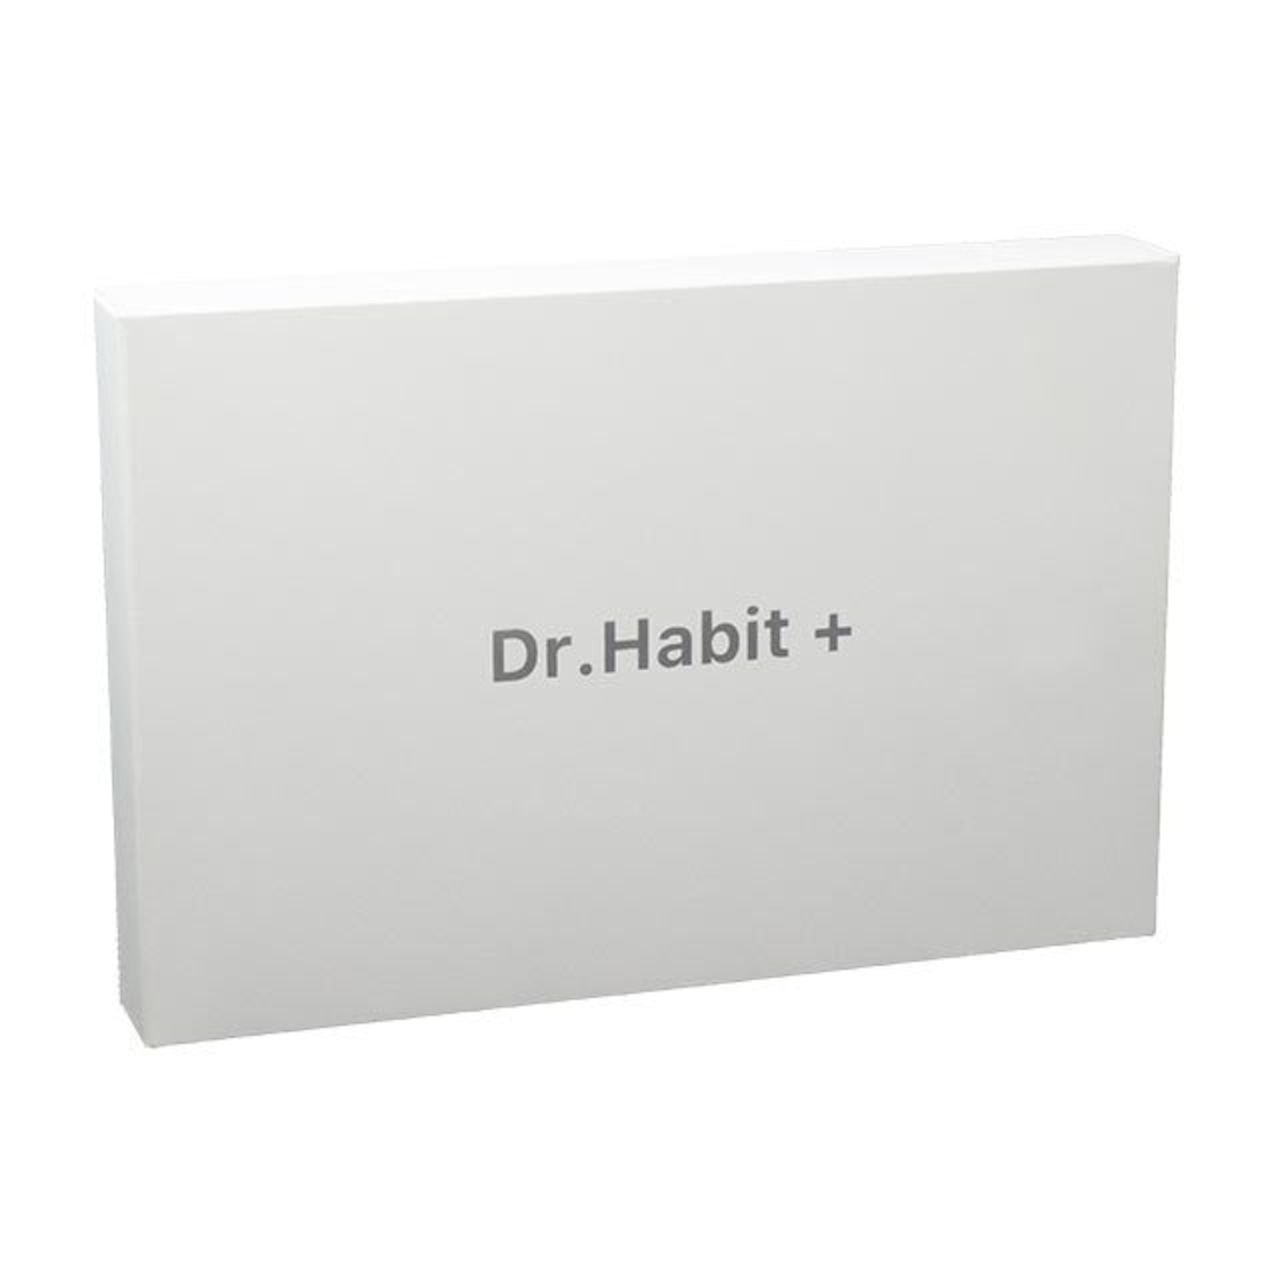 Dr.Habit +